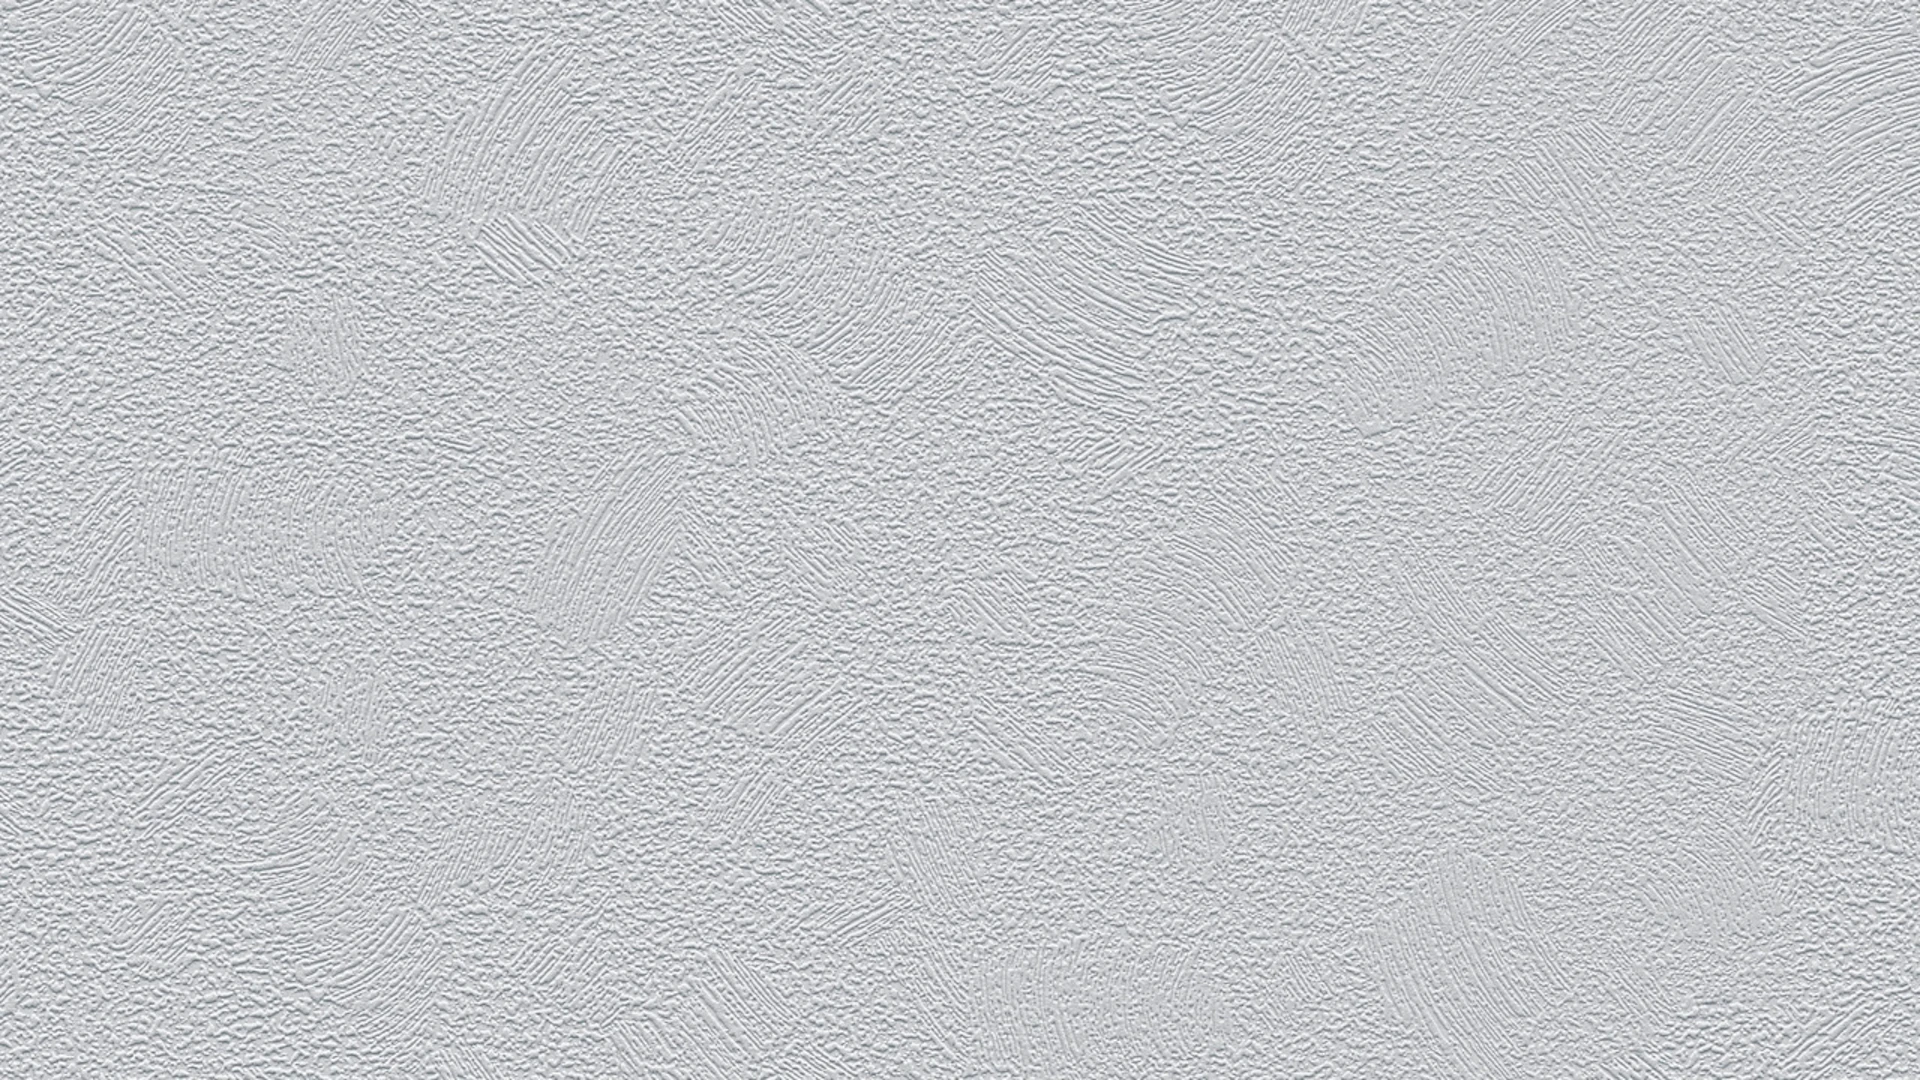 papier peint en vinyle gris moderne classique saveur unie 012